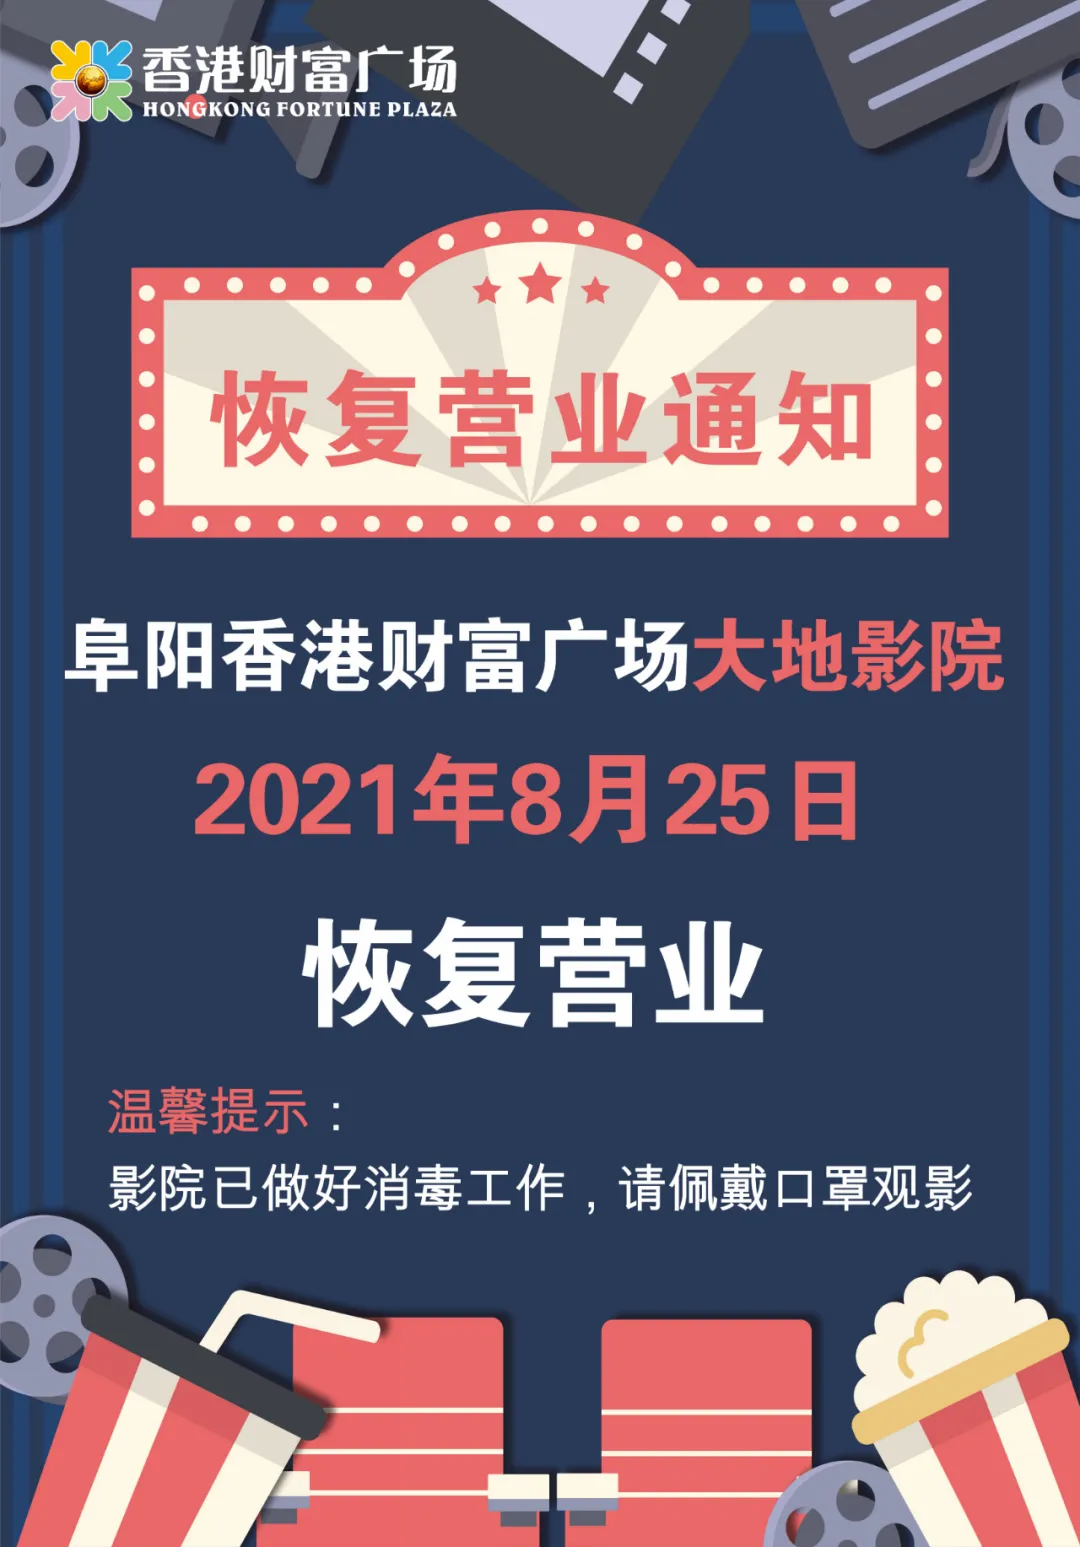 香港財富廣場 大地影院恢復營業了